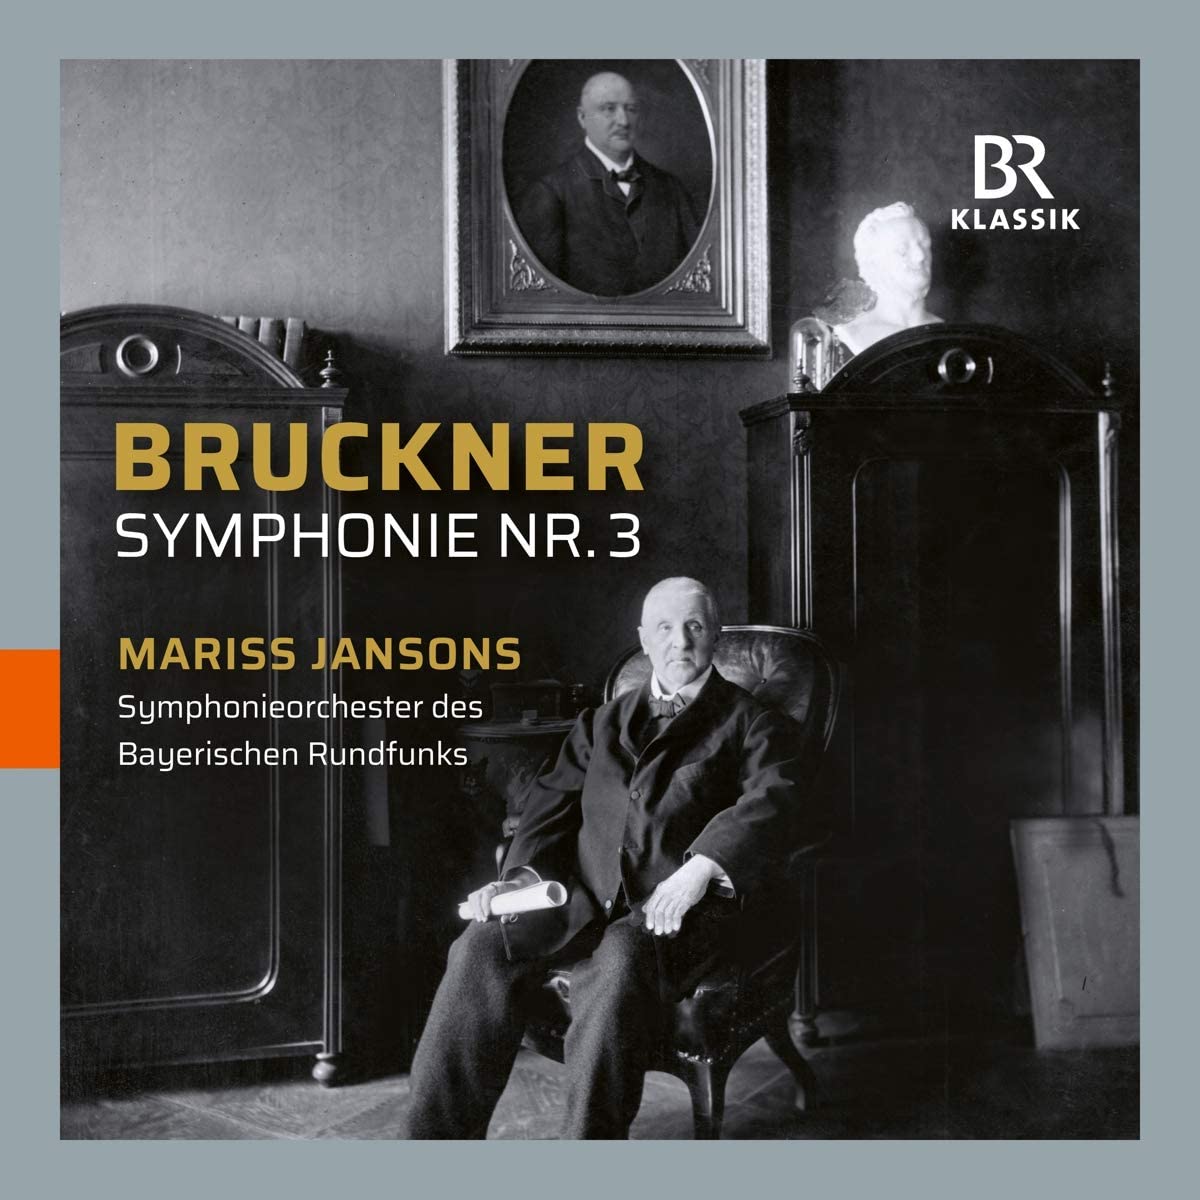 Bruckner: Symphony No. 3 | Anton Bruckner, Mariss Jansons, Symphonieorchester des Bayerischen Rundfunks